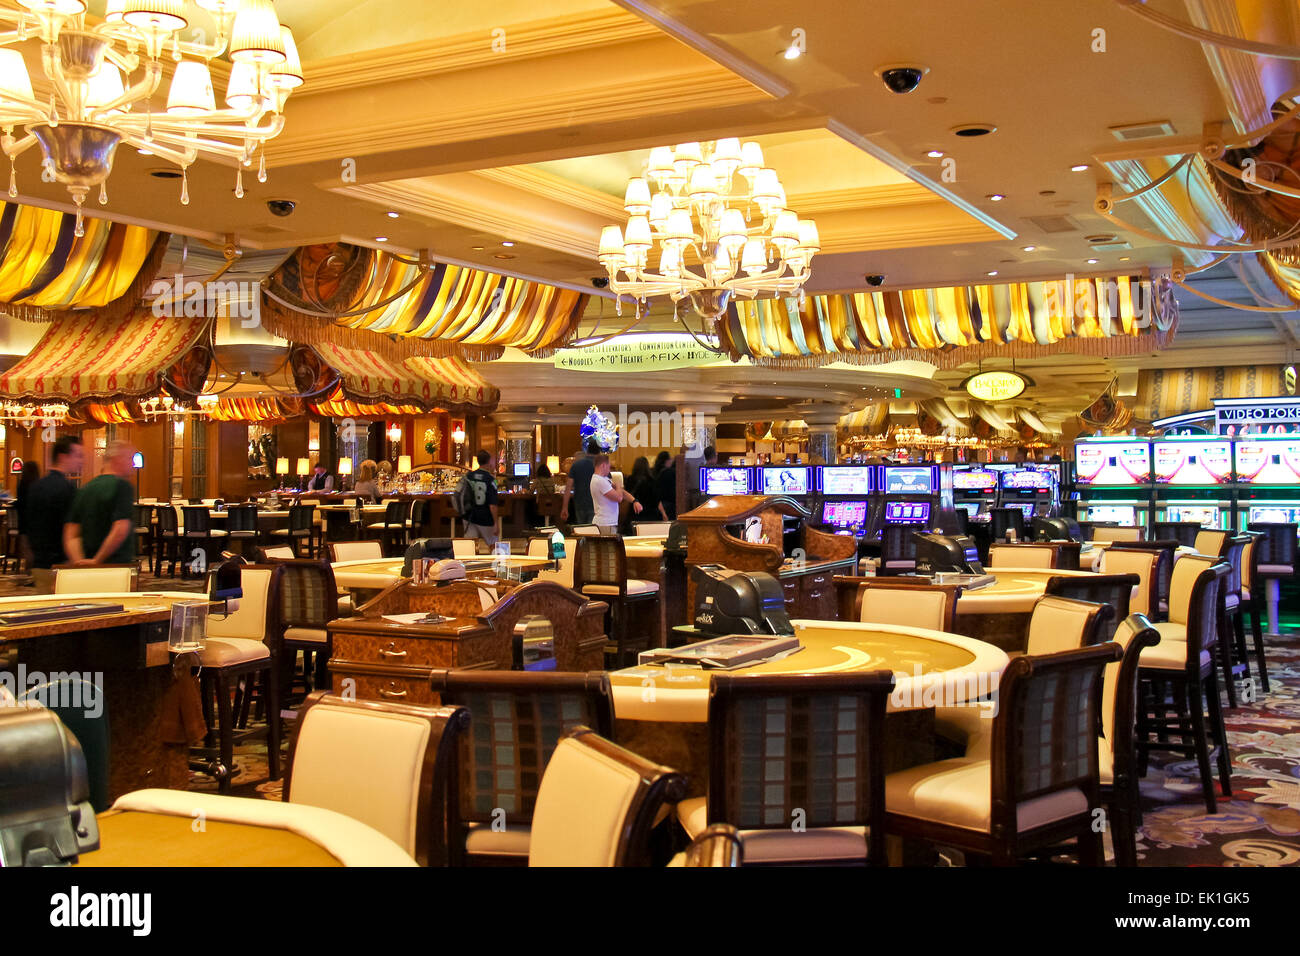 Las Vegas, Nevada, USA - 21. Oktober 2013: Casino in Bellagio Hotel in Las Vegas Bellagio Hotel und Casino 1998 eröffnet. Das Luxushotel von mgm Erholungsorte besessen international Stockfoto